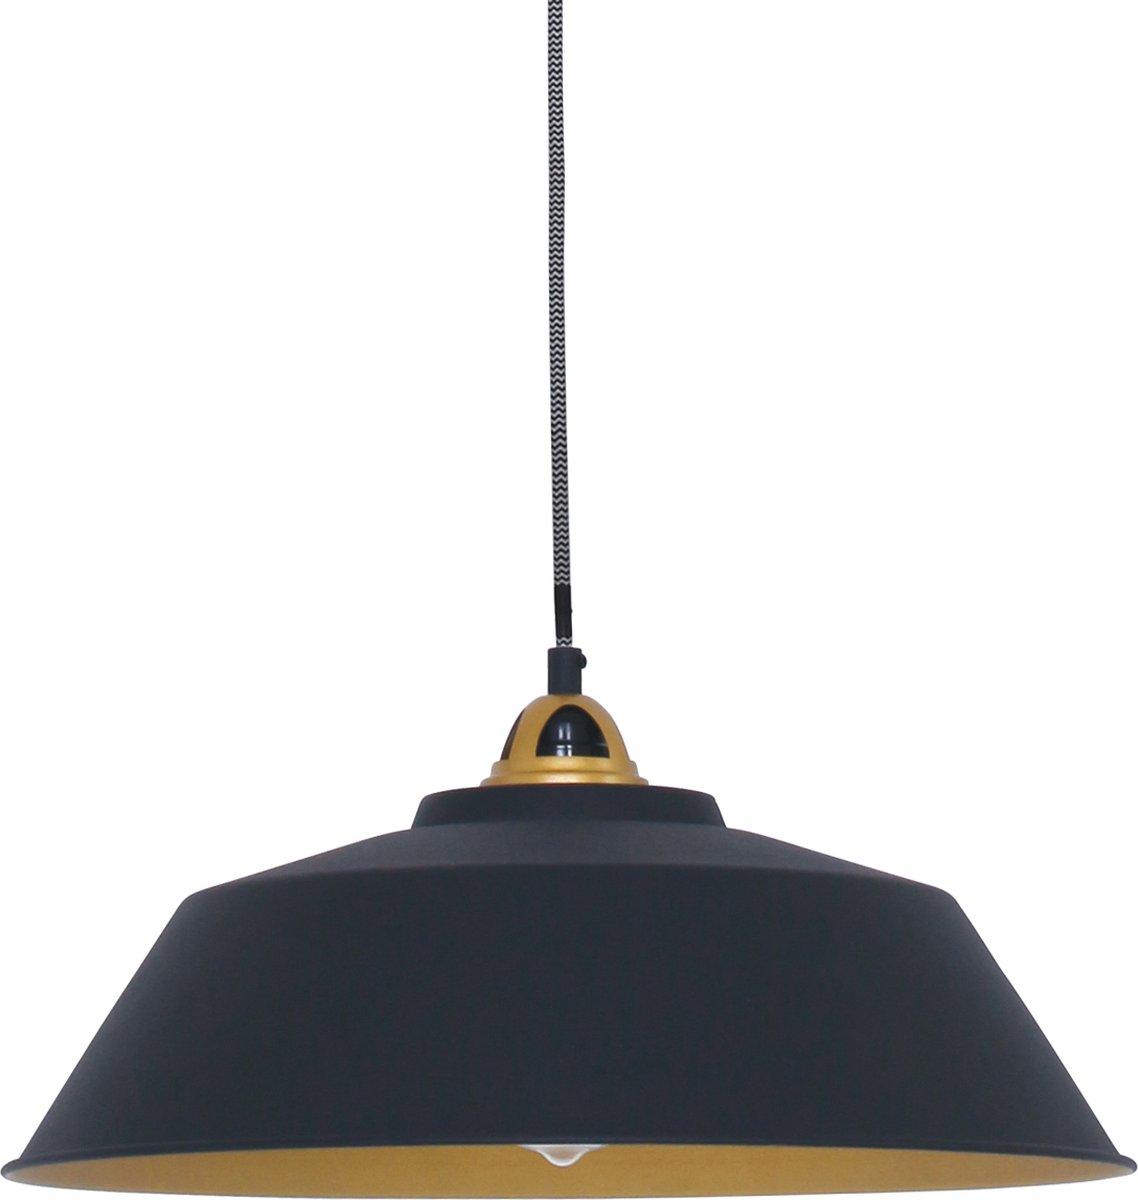 Scandinavische hanglamp Nové | 1 lichts | zwart / goud | metaal | Ø 42 cm | in hoogte verstelbaar tot 125 cm | eetkamer lamp / eettafellamp | modern / sfeervol design